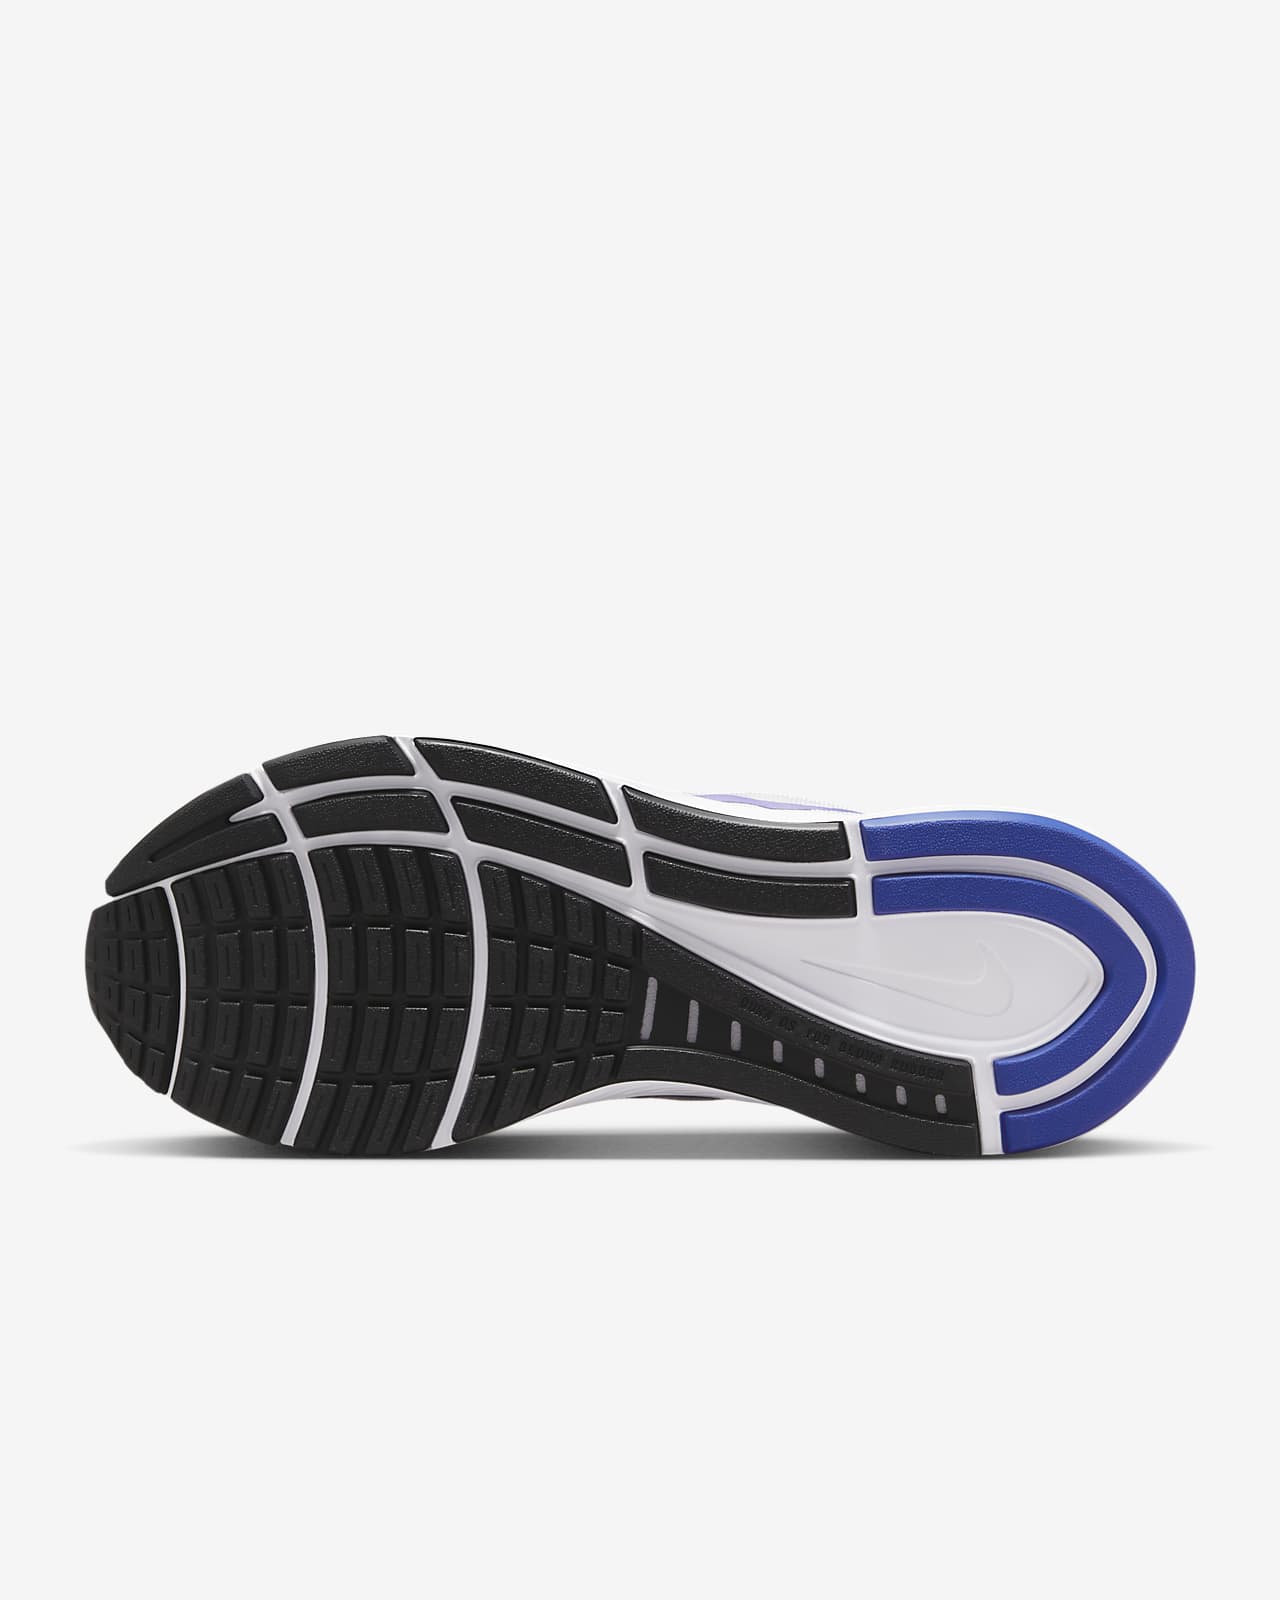 sentido común pegamento árabe Nike Structure 24 Zapatillas de running para asfalto - Mujer. Nike ES